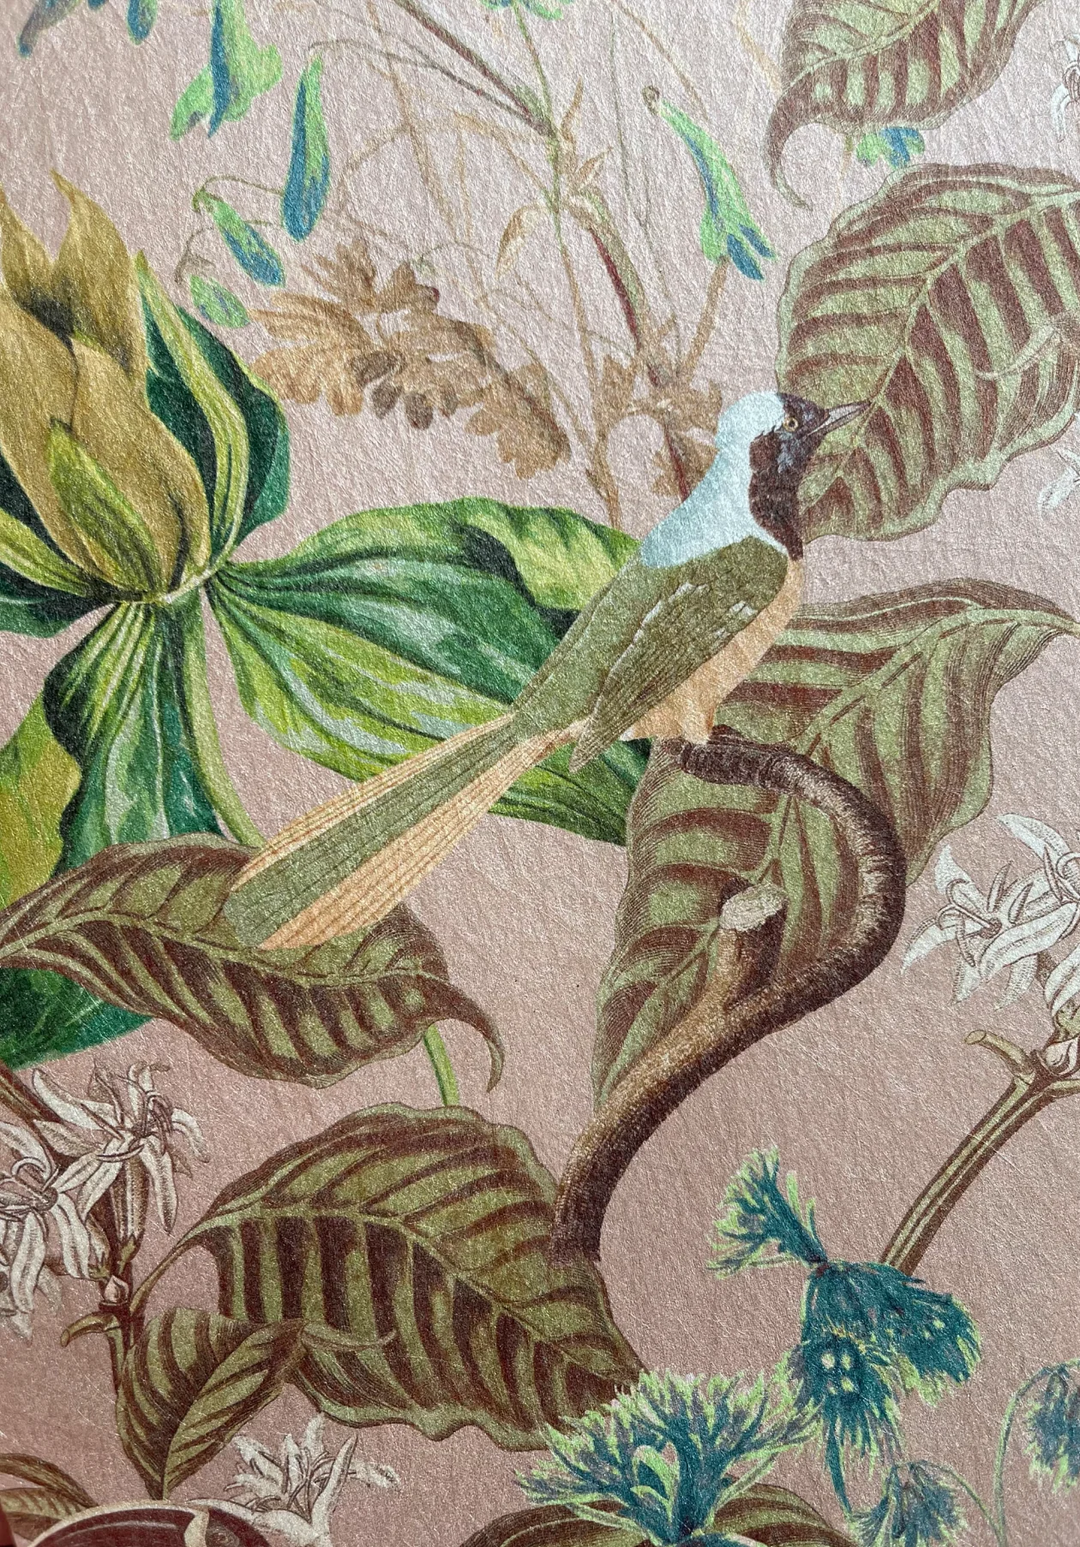 Deus-ex-Gardenia-wallpaper-Cinder-Rose-French-Toile-design-leaves-birds-subtle-woven-background-jasmine-leaves-Cinder-rose-Pink